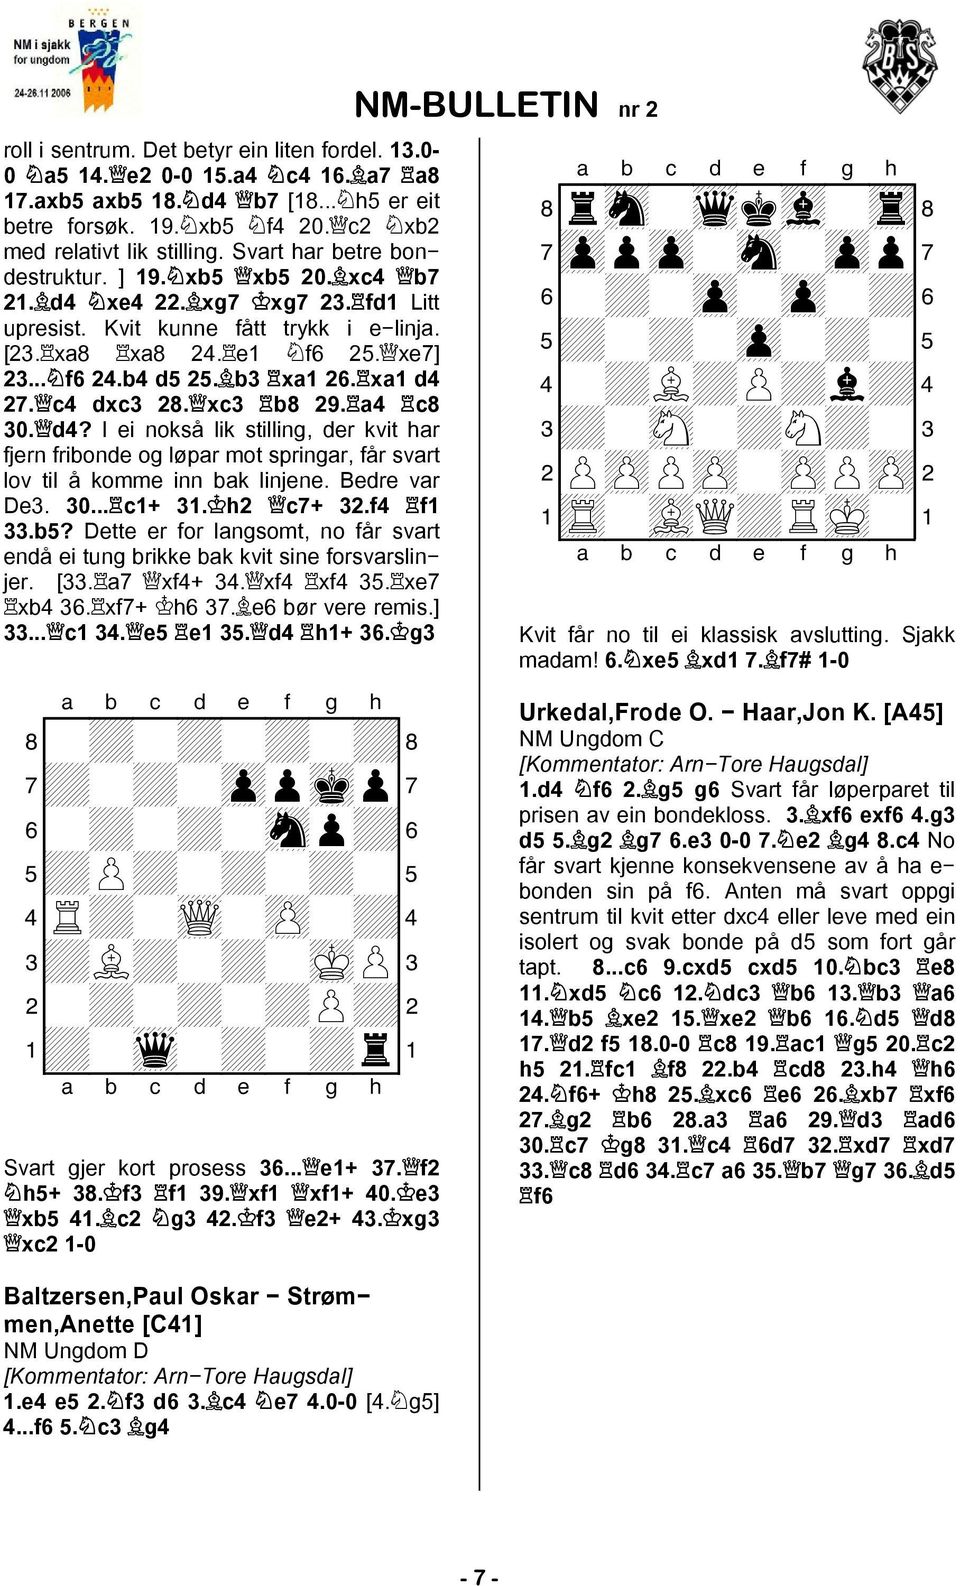 xa1 d4 27. c4 dxc3 28. xc3 b8 29. a4 c8 30. d4? I ei nokså lik stilling, der kvit har fjern fribonde og løpar mot springar, får svart lov til å komme inn bak linjene. Bedre var De3. 30... c1+ 31.